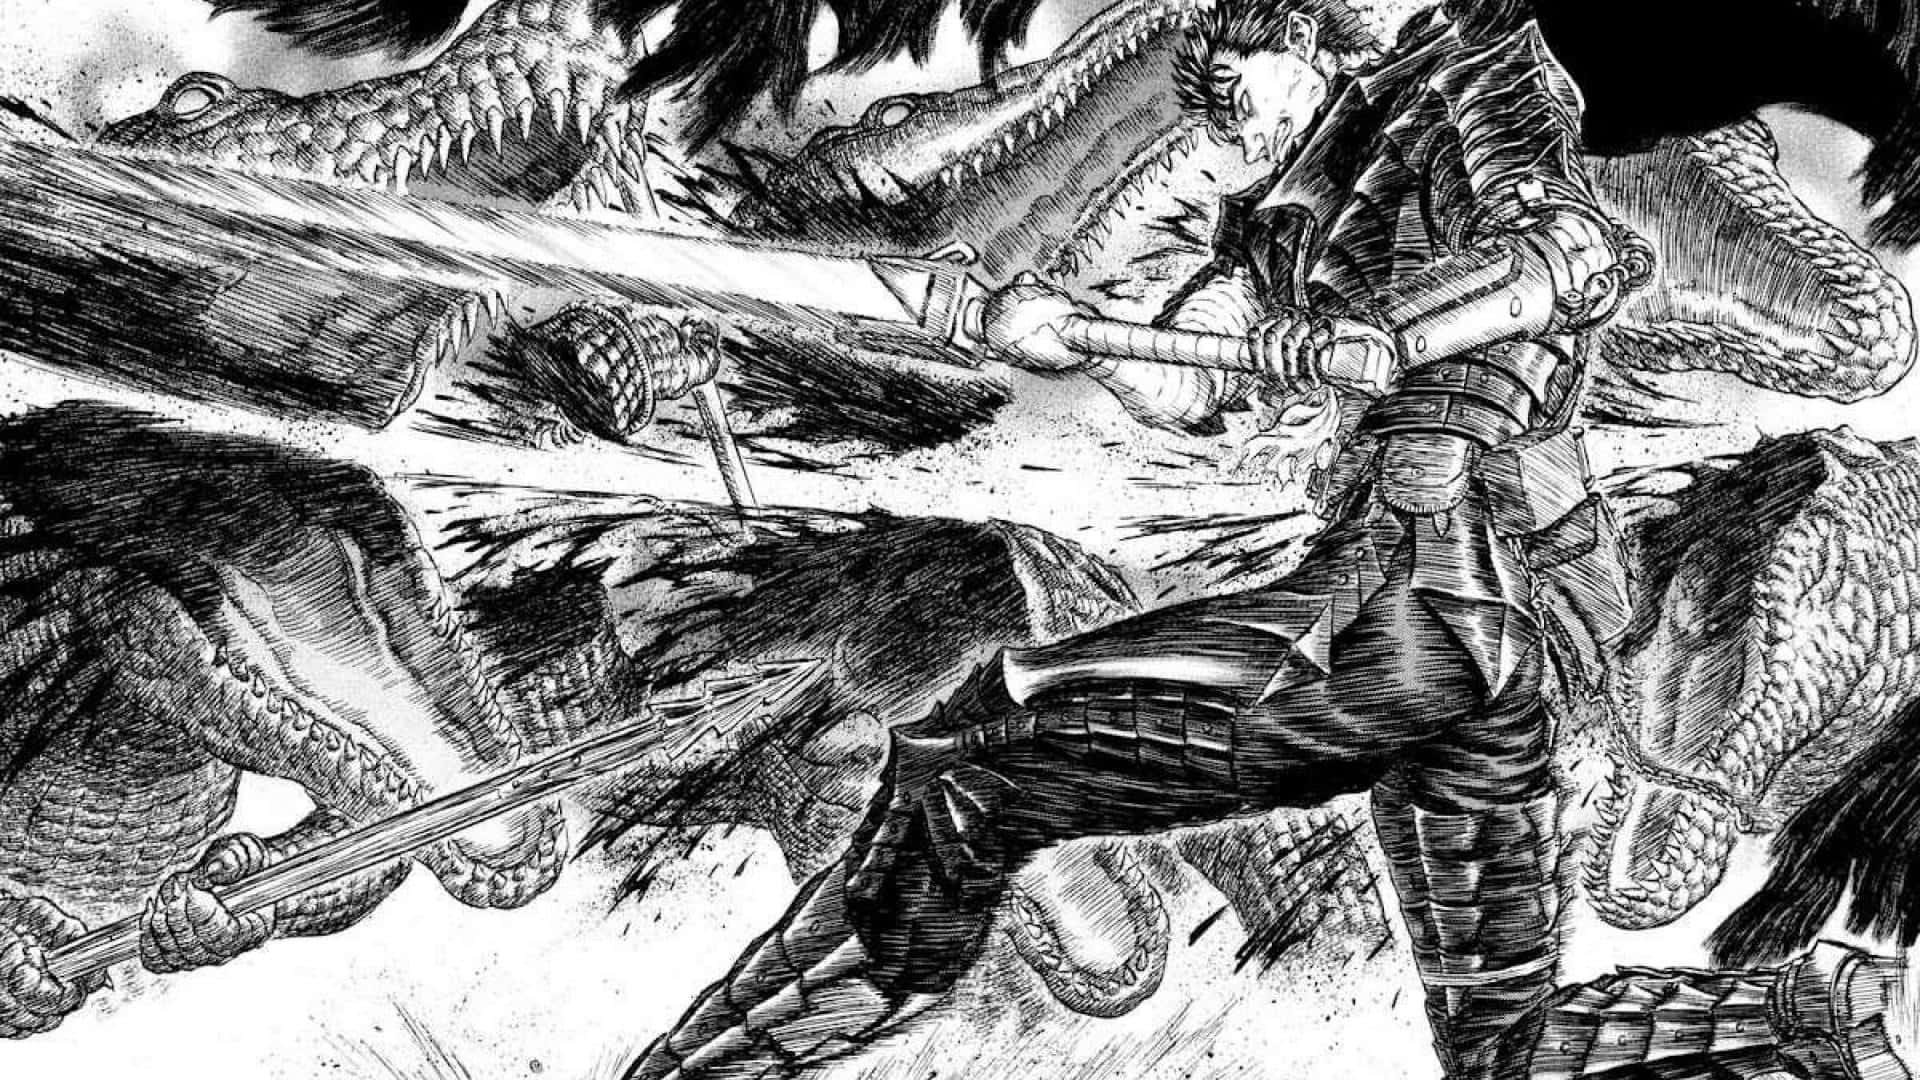 Giv efter for mørket i Berserk, en magtfuld og spændende manga-serie. Wallpaper